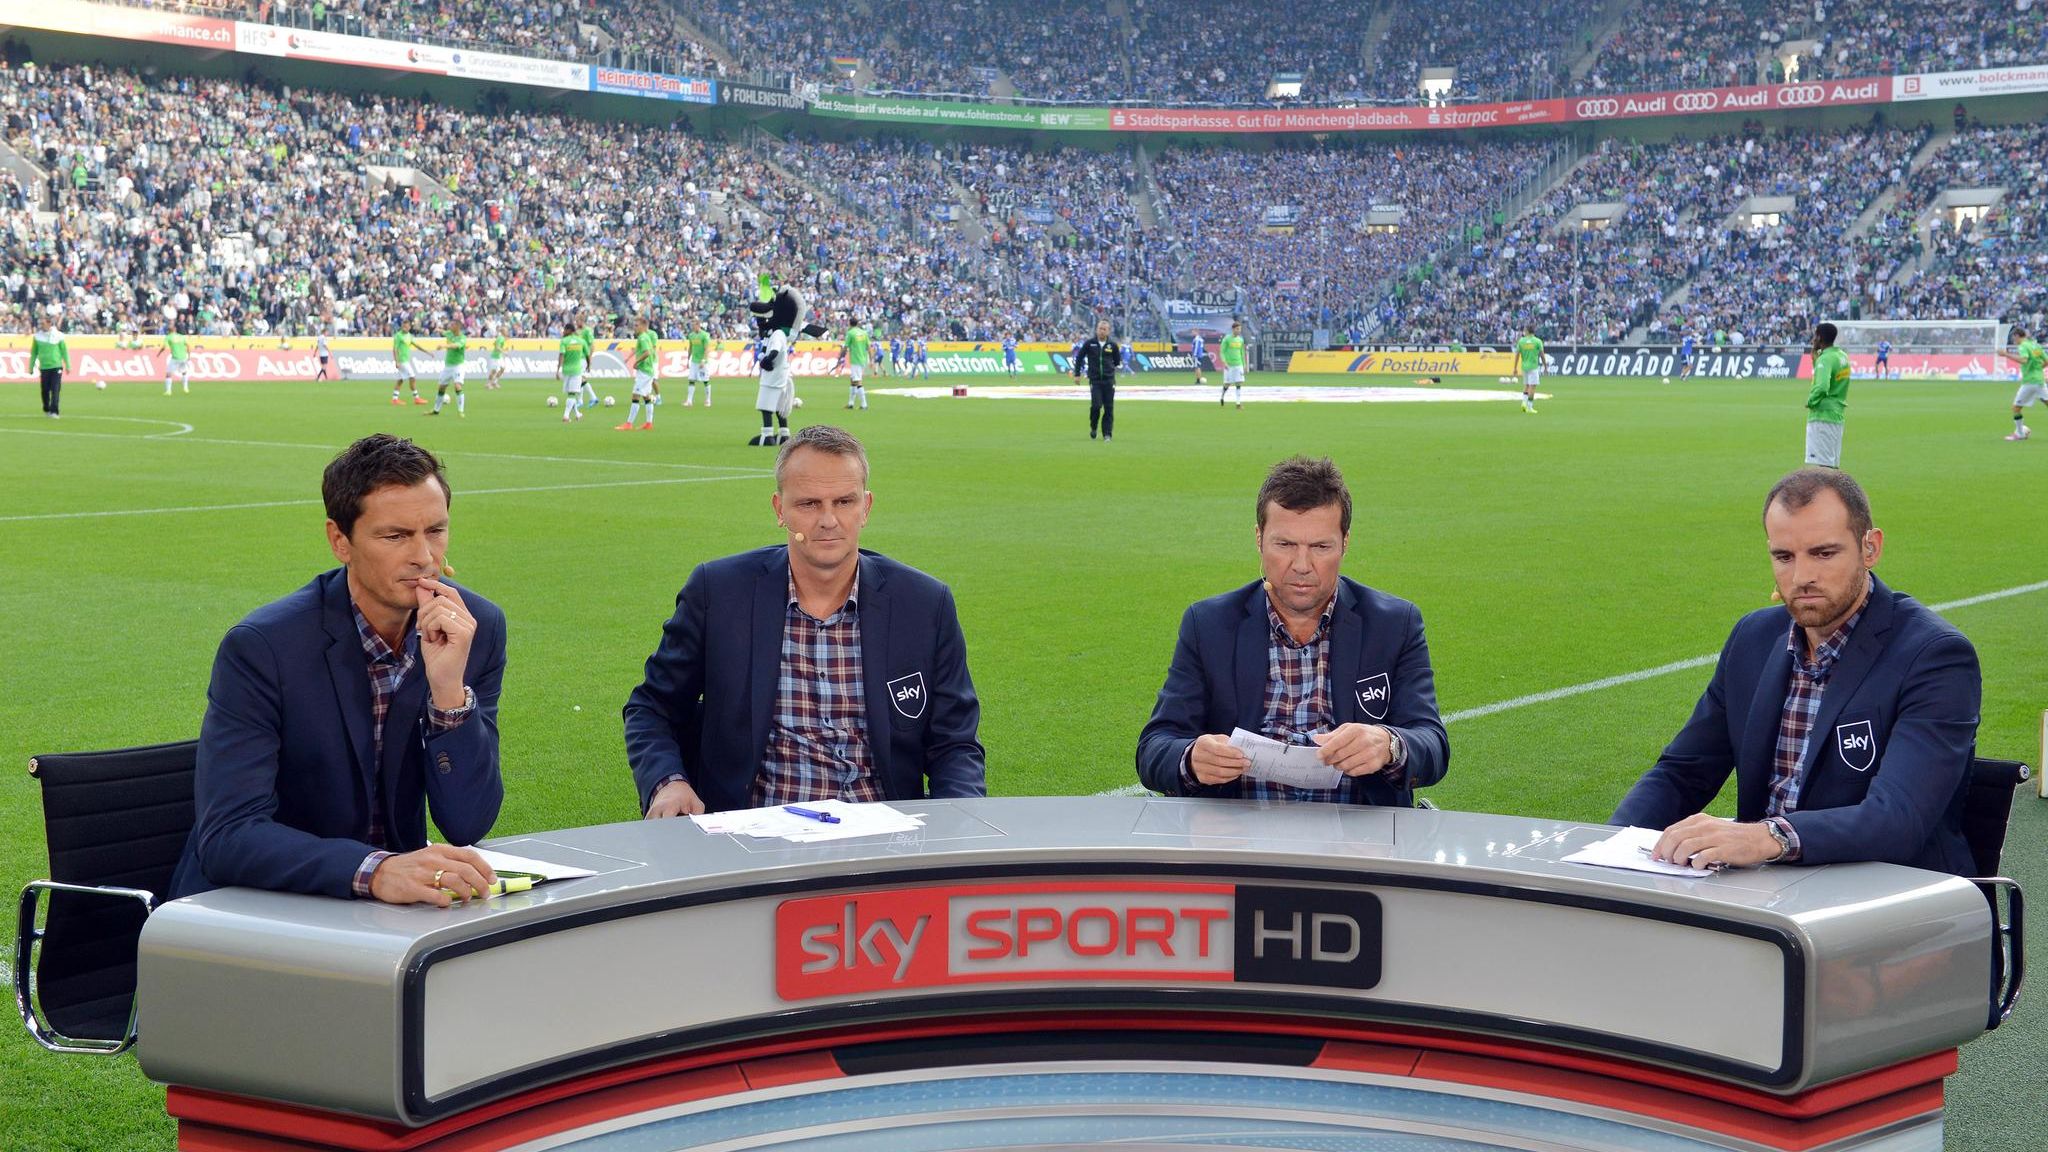 Sky Sender zieht Moderatoren aus Bundesliga-Stadien ab und erntet Shitstorm STERN.de